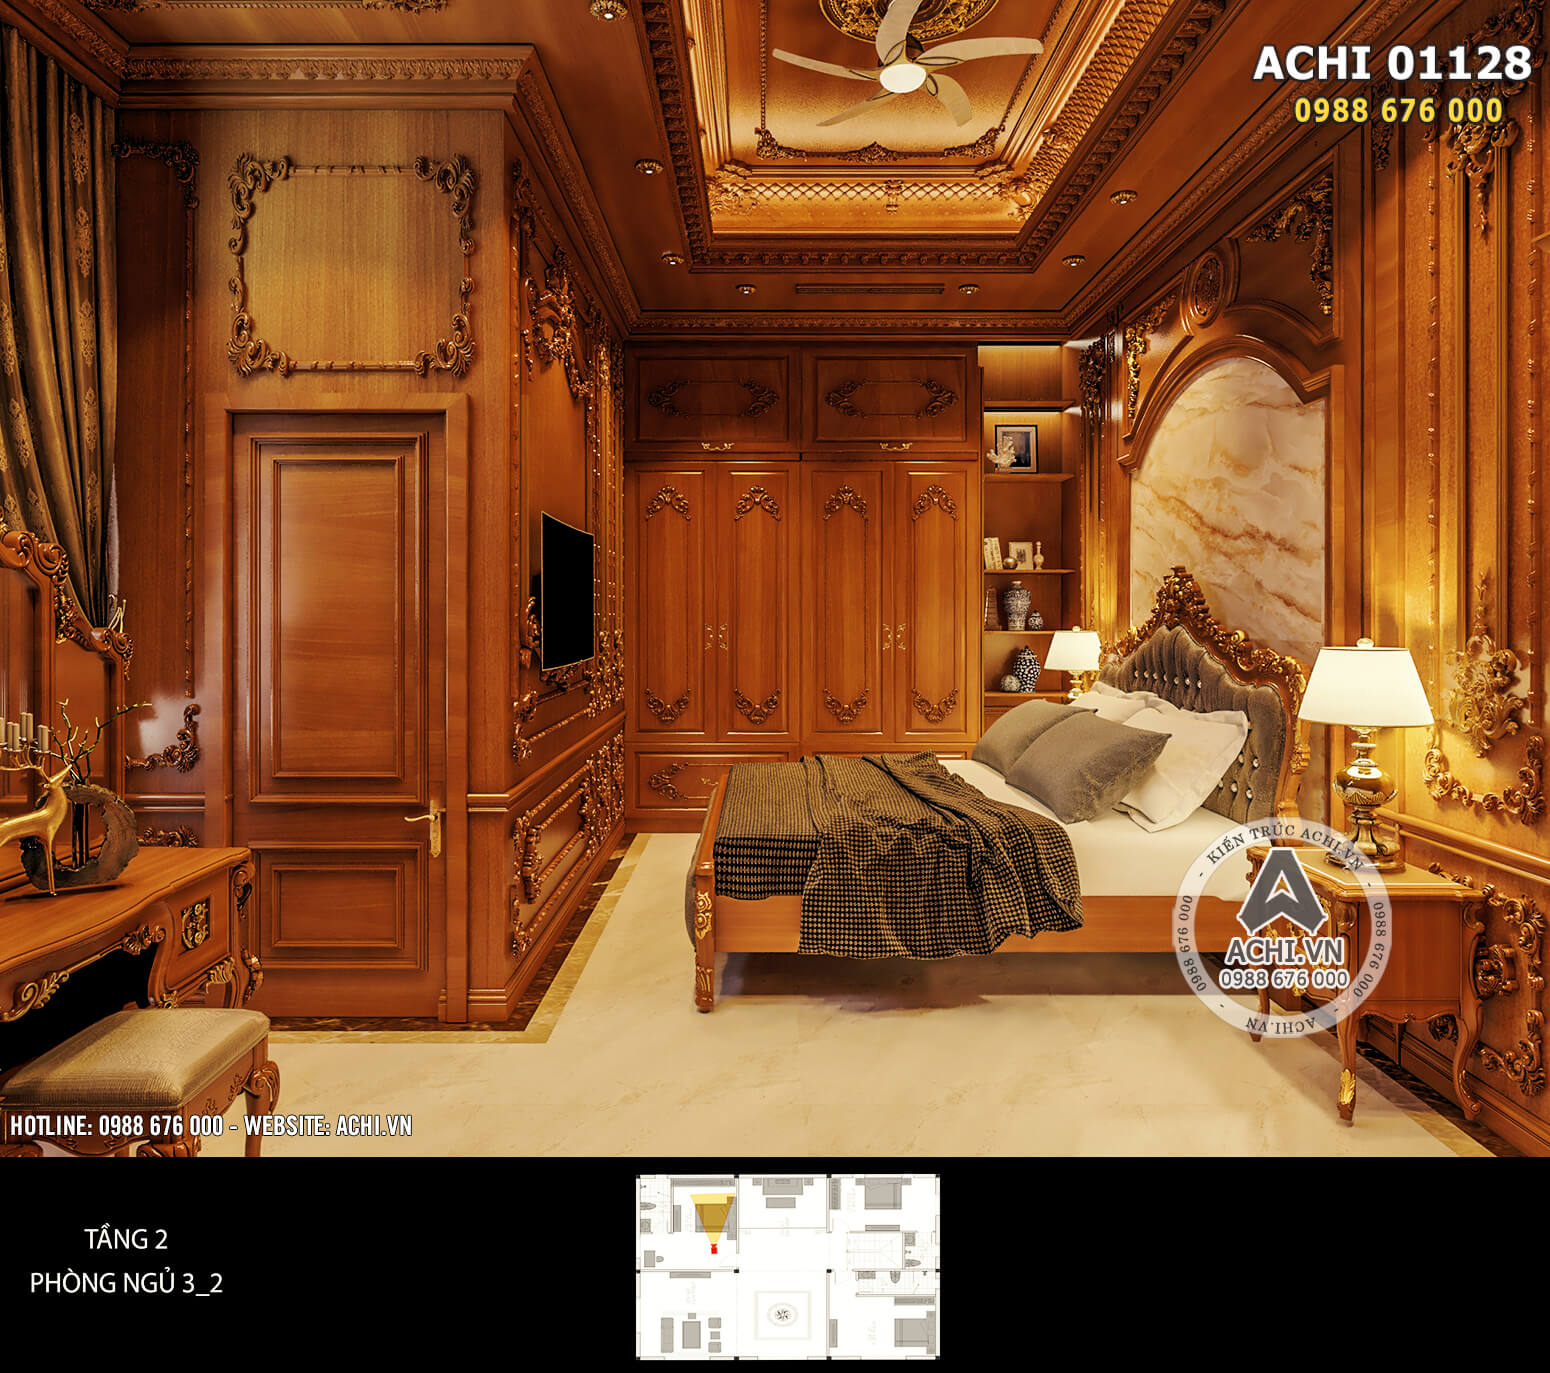 Thiết kế phỏng ngủ master bằng gỗ gõ đỏ mang đến cảm giác hoàng gia sang trọng